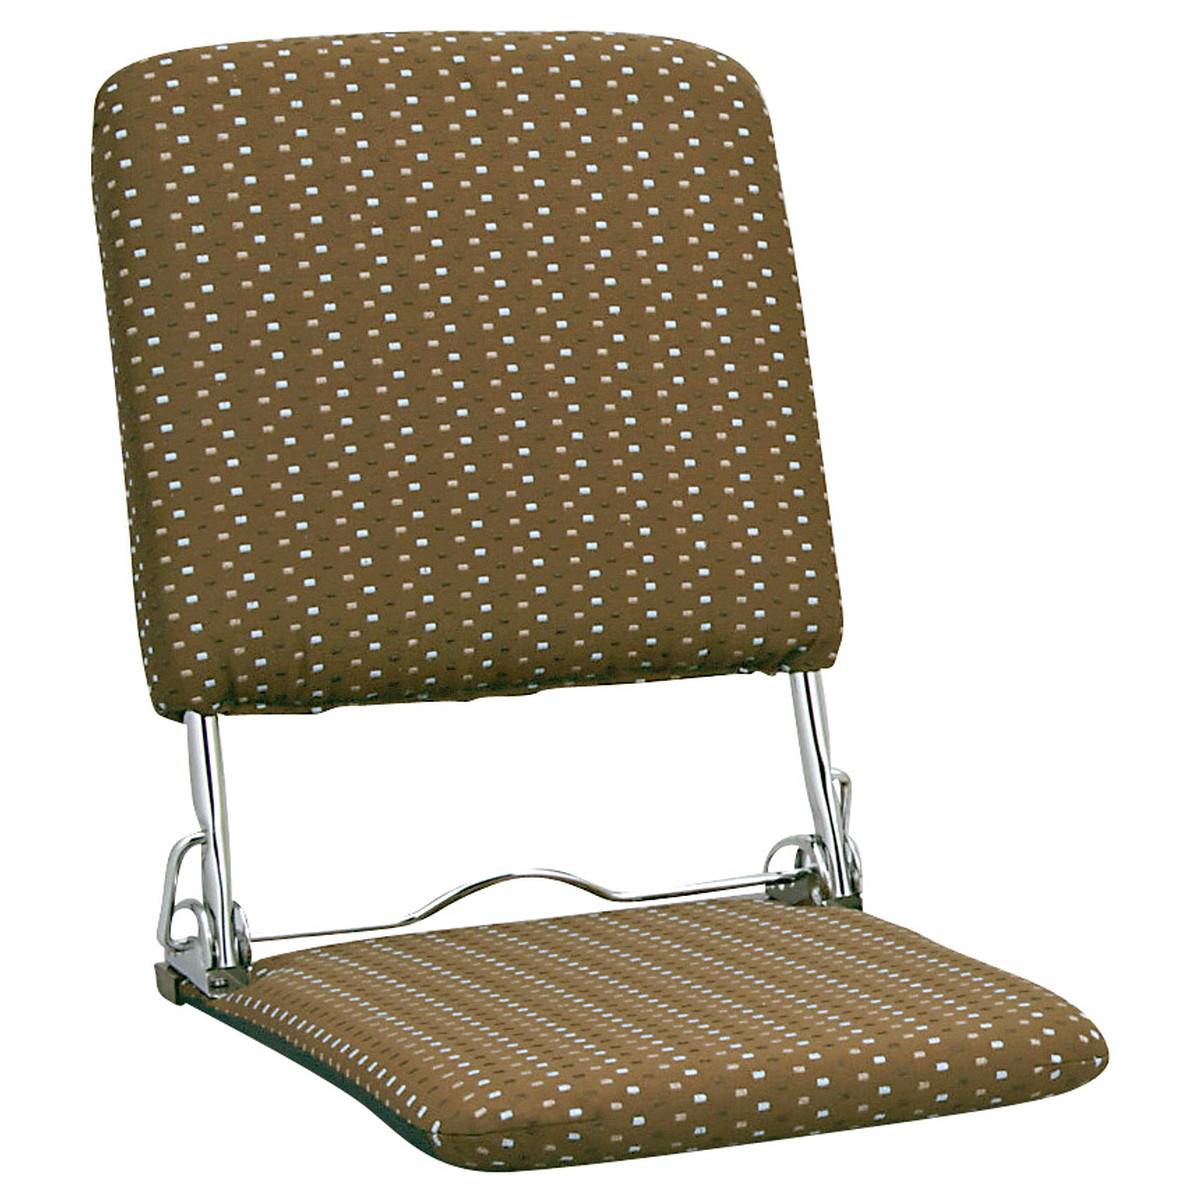 日本製 折りたたみ式 リクライニング ジャガード織り 座椅子 (ブラウン) 座椅子